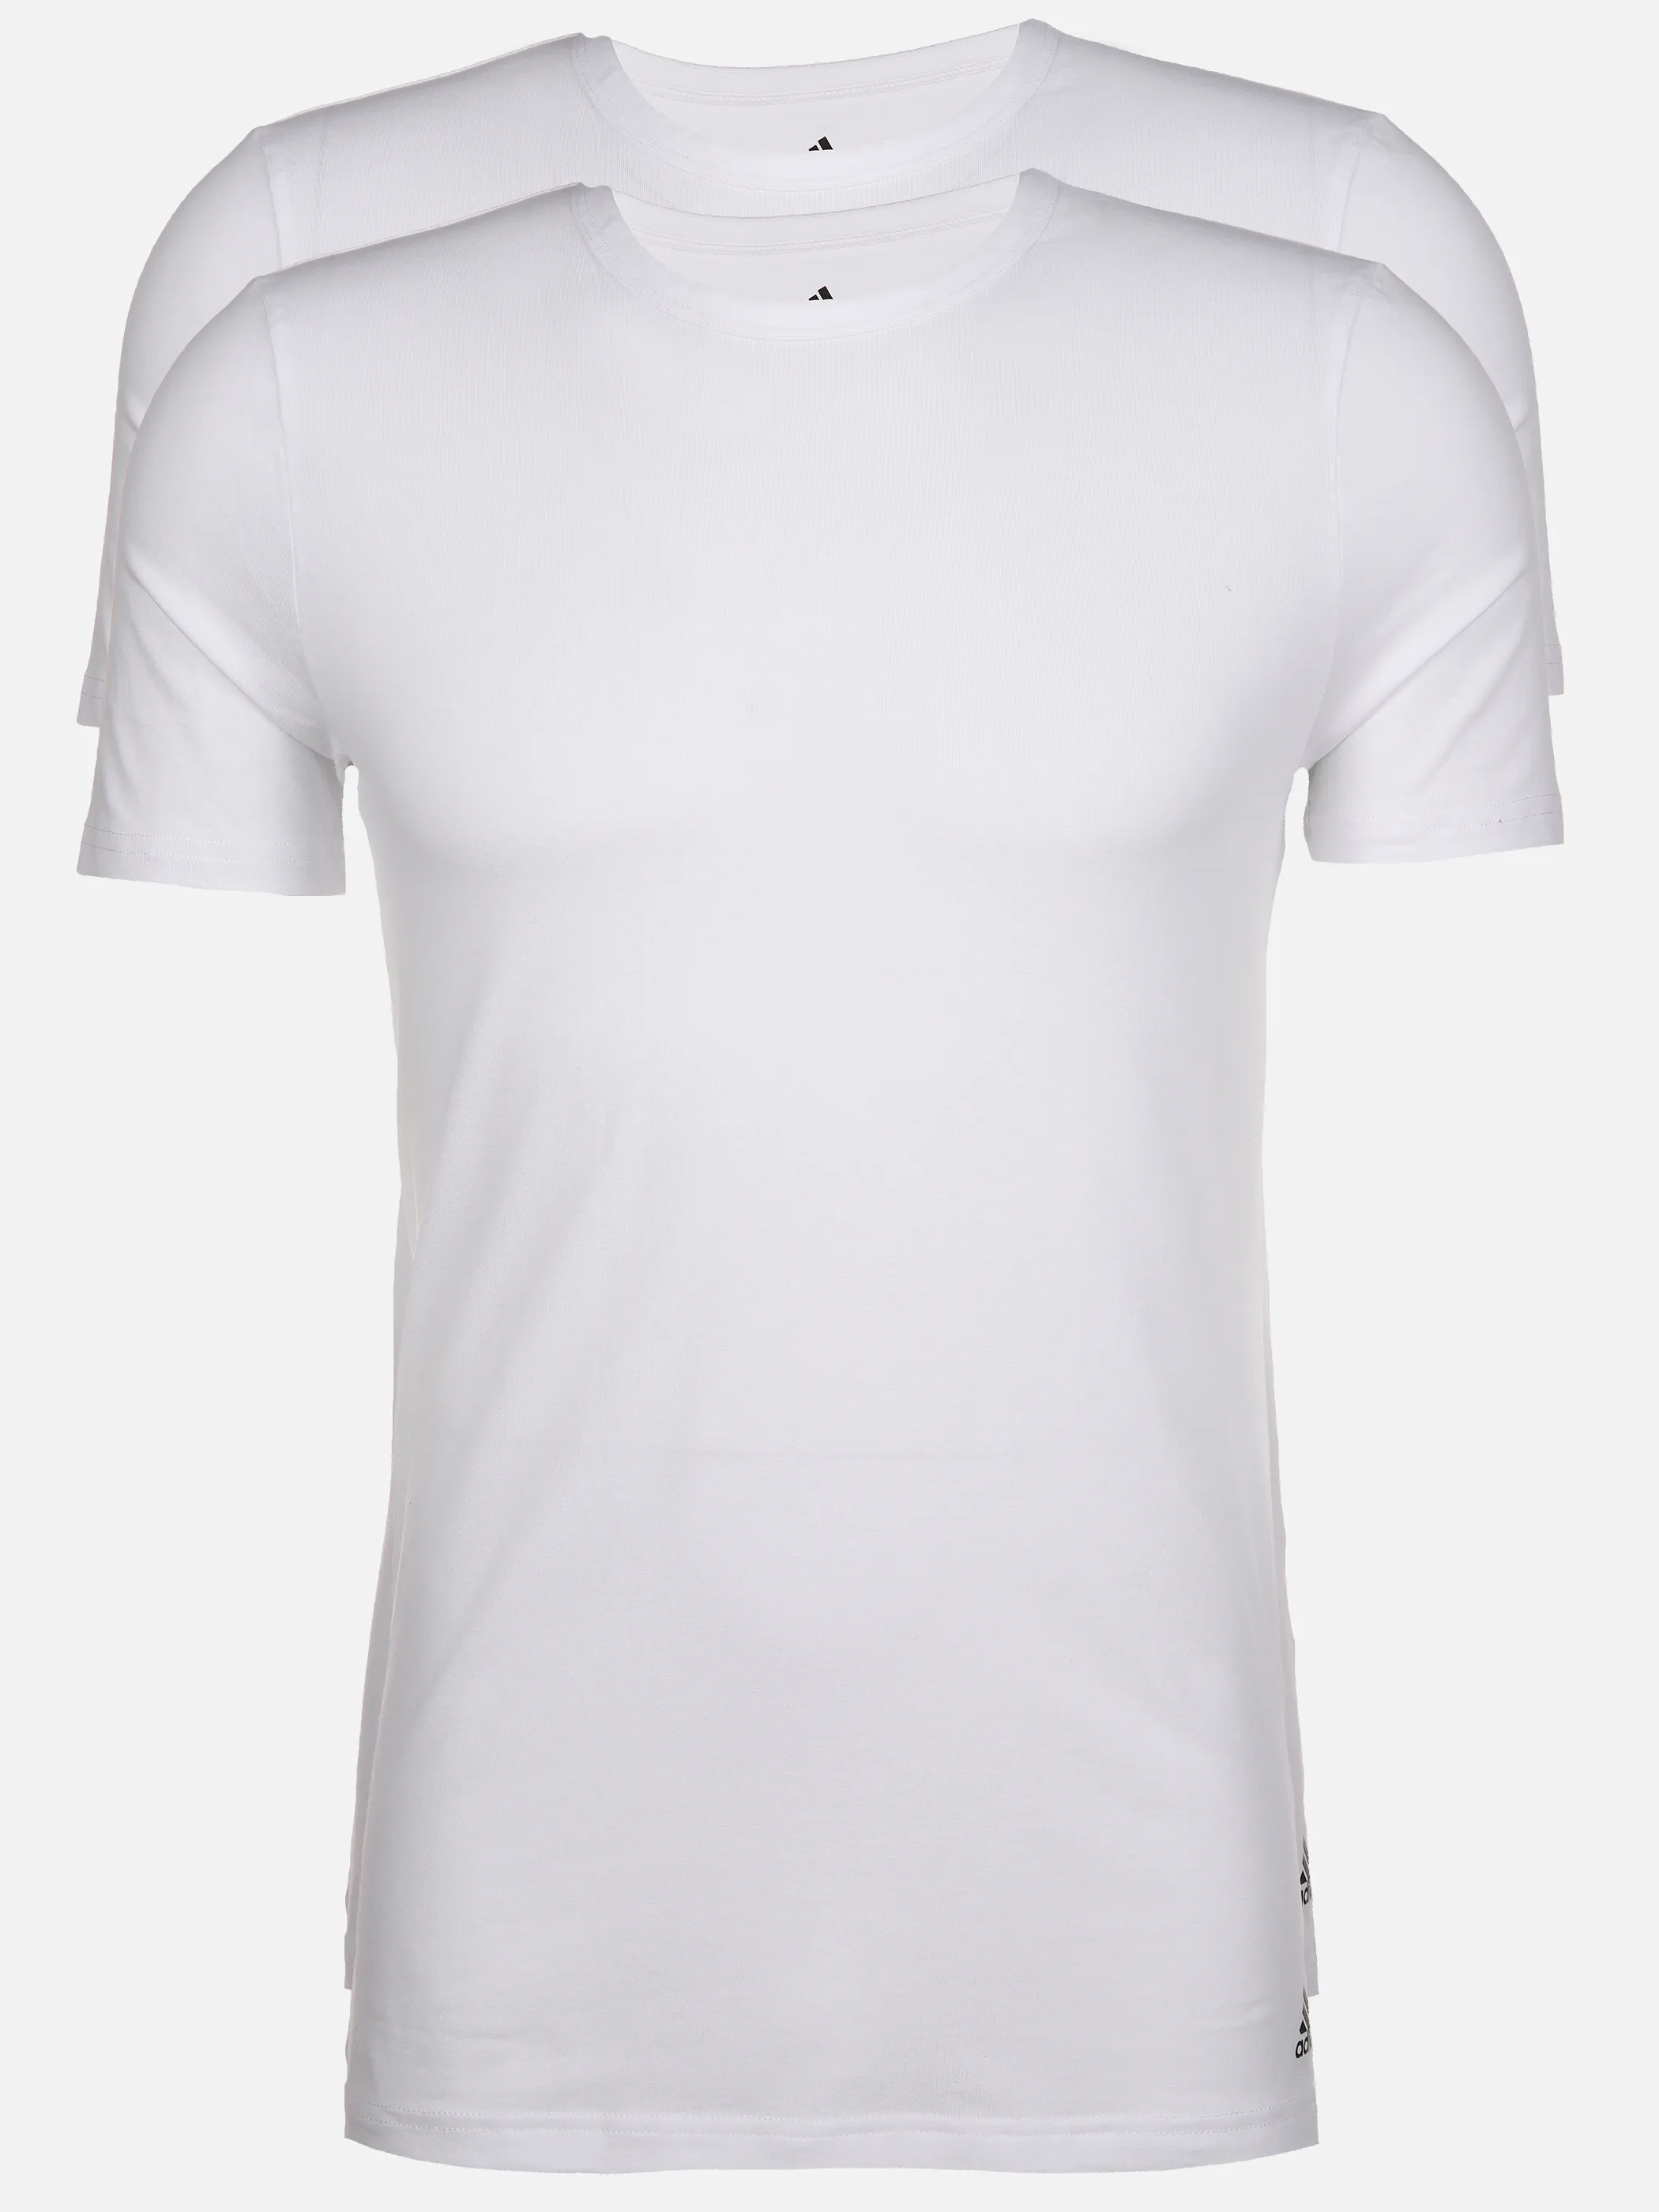 Adidas 4A2M04 Crew Neck T-Shirt (2PK) Weiß 894517 100 1